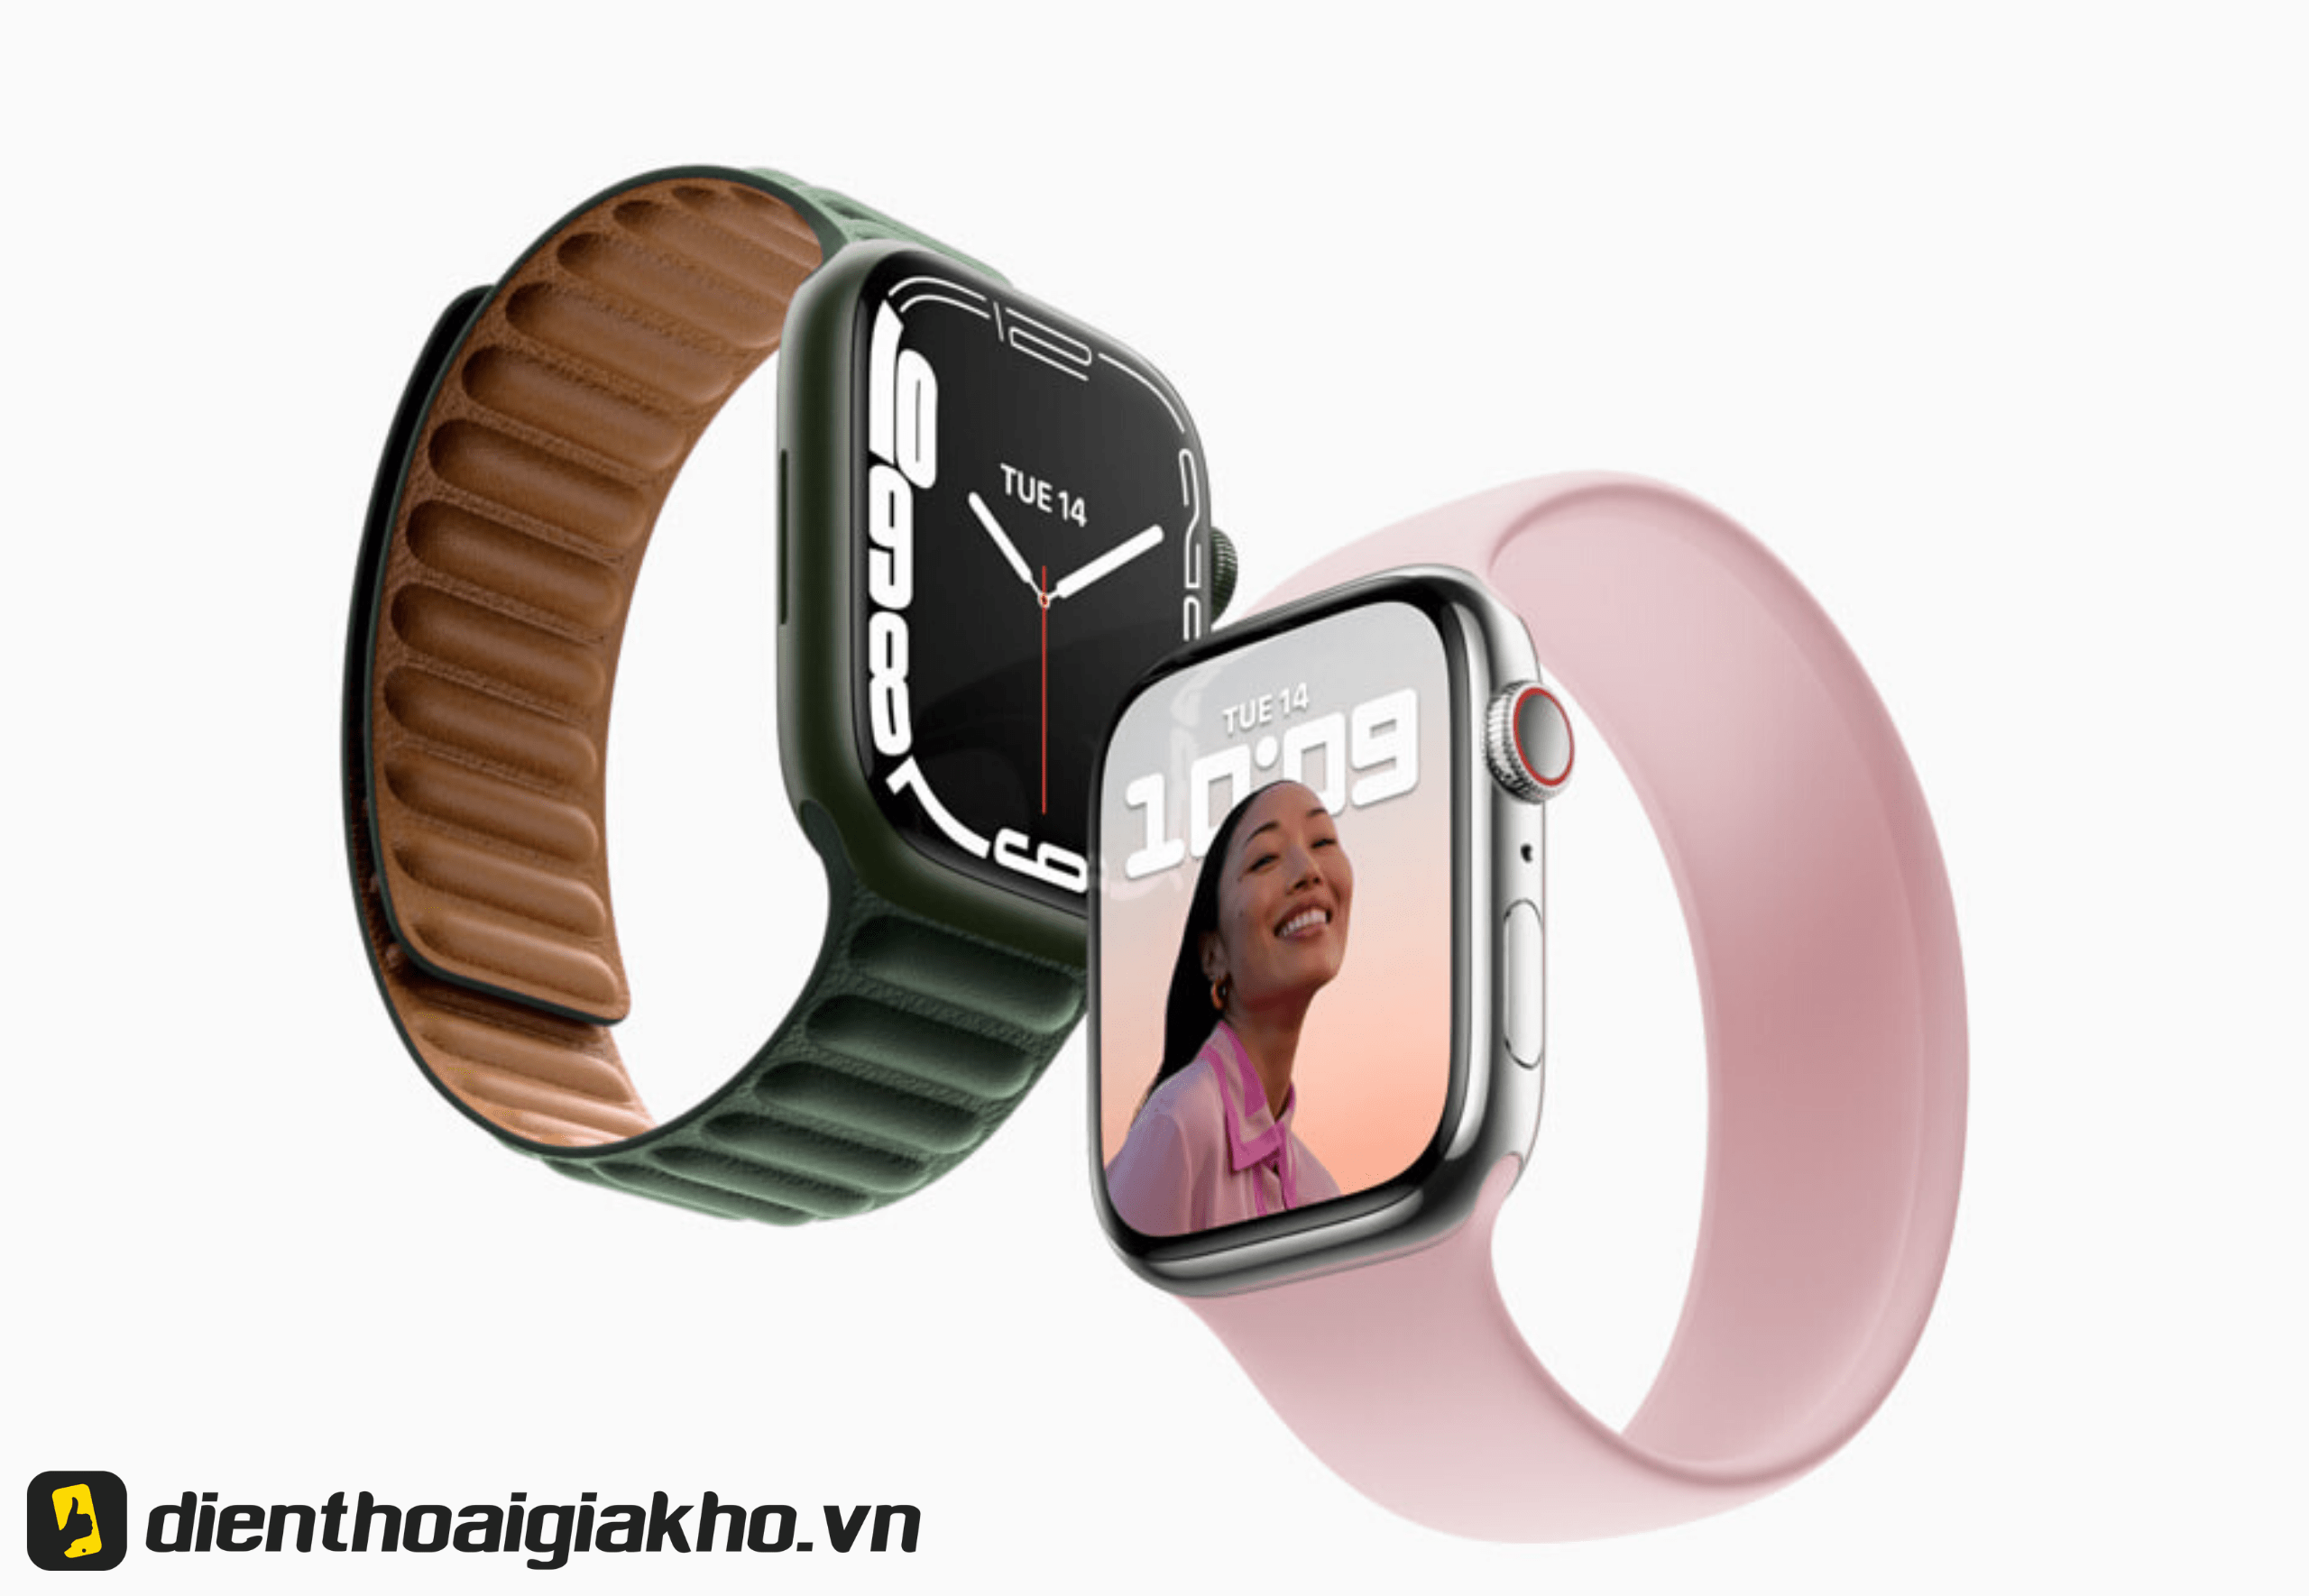 Apple Watch Series 7 45mm LTE Stainless Steel With Sport Band với dây đeo cao su mềm mại, thoải mái. Yên tâm sử dụng, không lo bị thấm nước, bung ra khi bơi lội